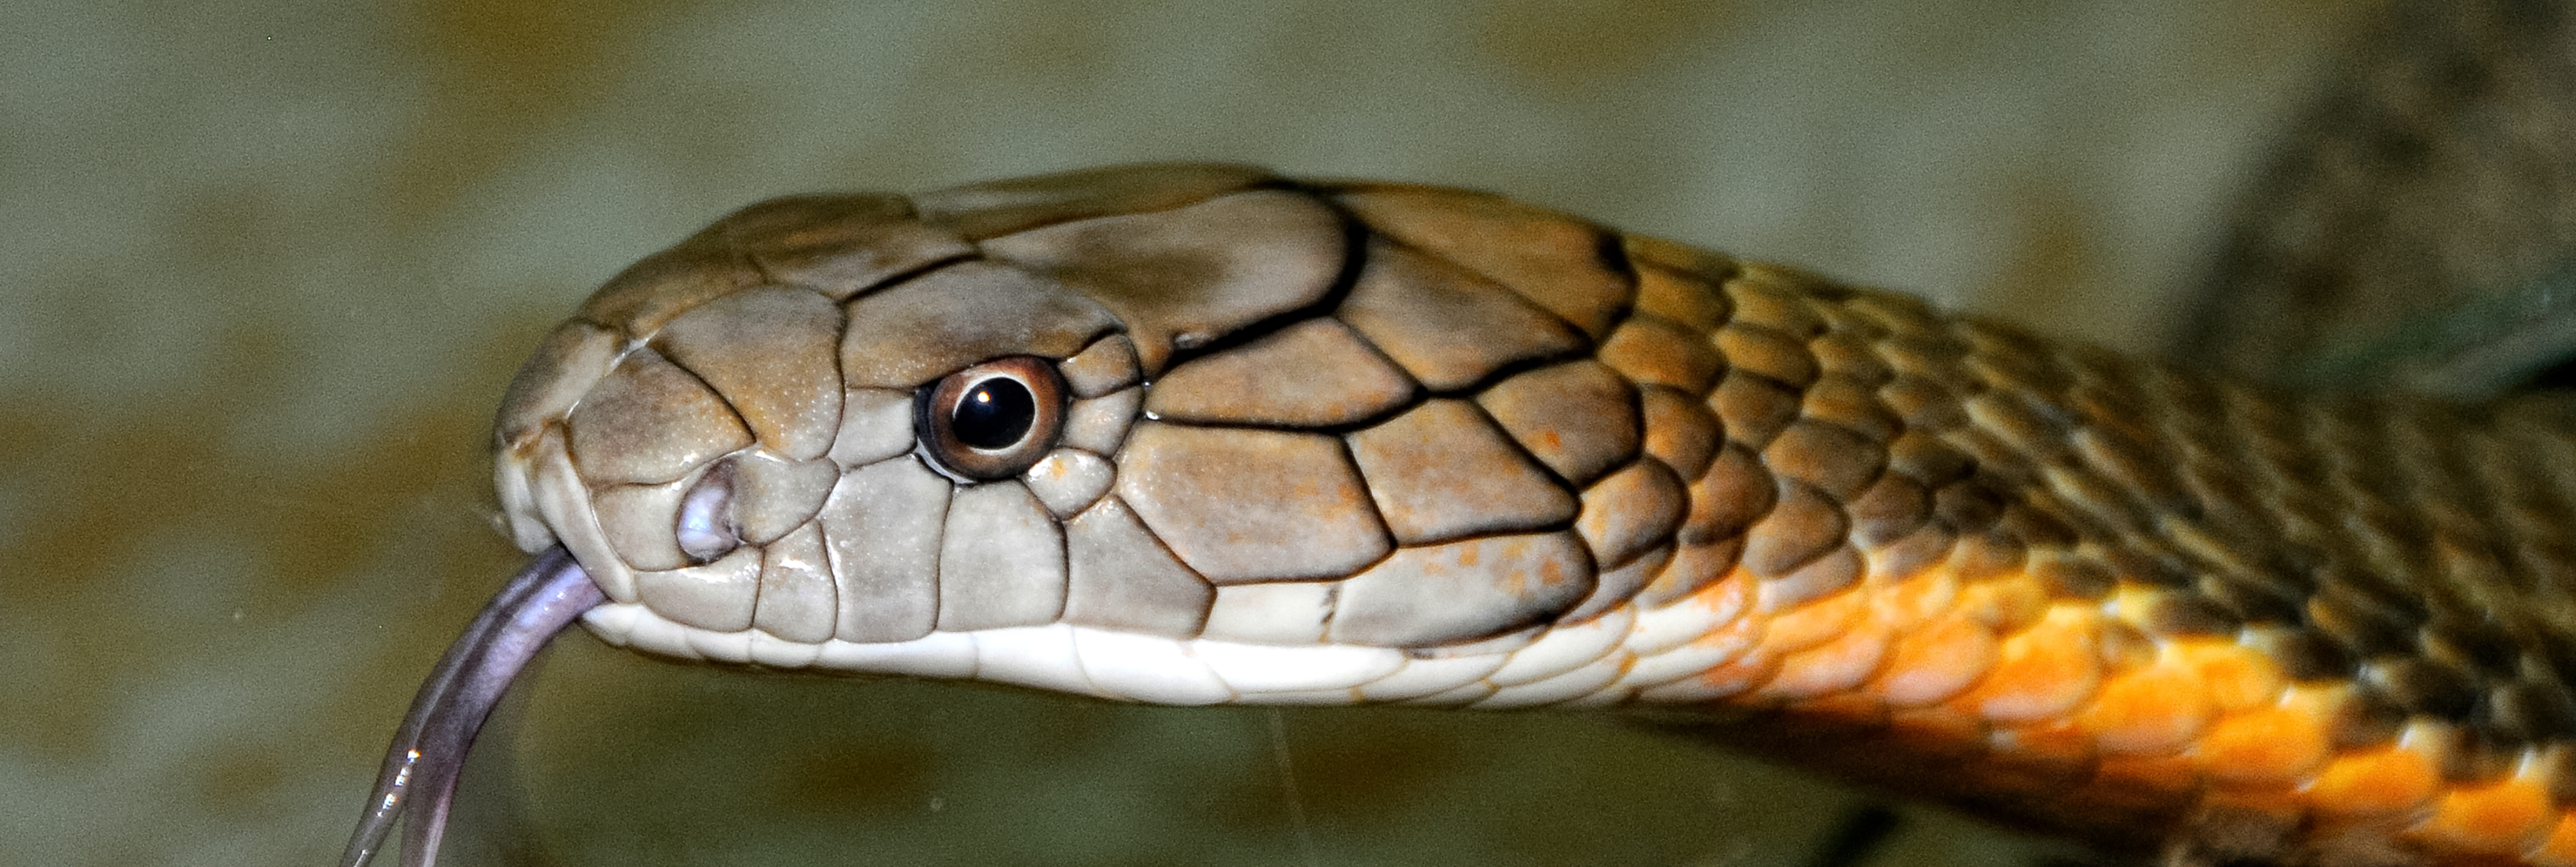 king-cobra-snake-farm-bangkok-photo-4731a.jpg